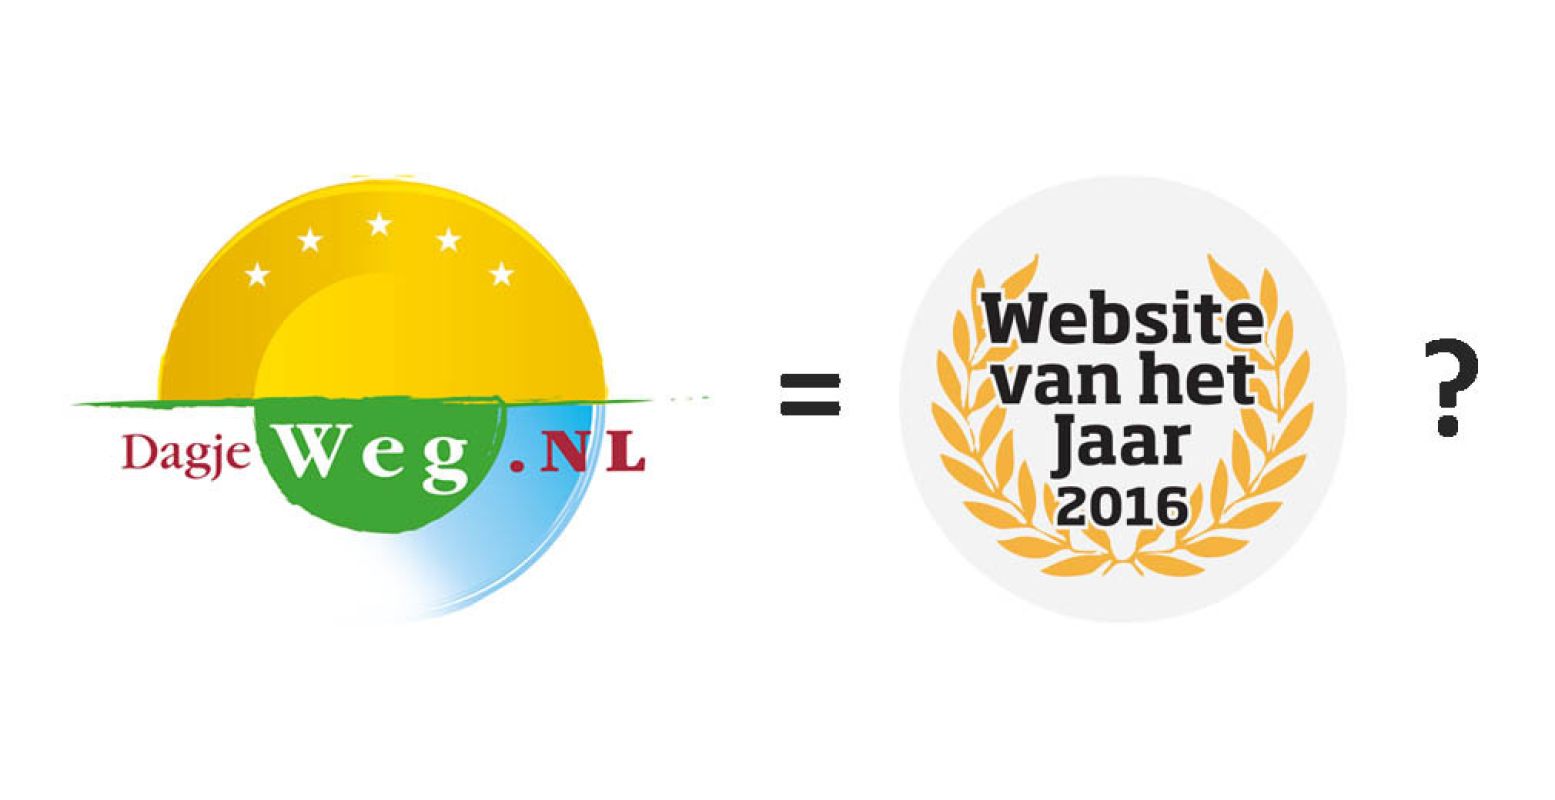 DagjeWeg.NL is genomineerd voor Website van het Jaar 2016 in de categorie Vrije Tijd.